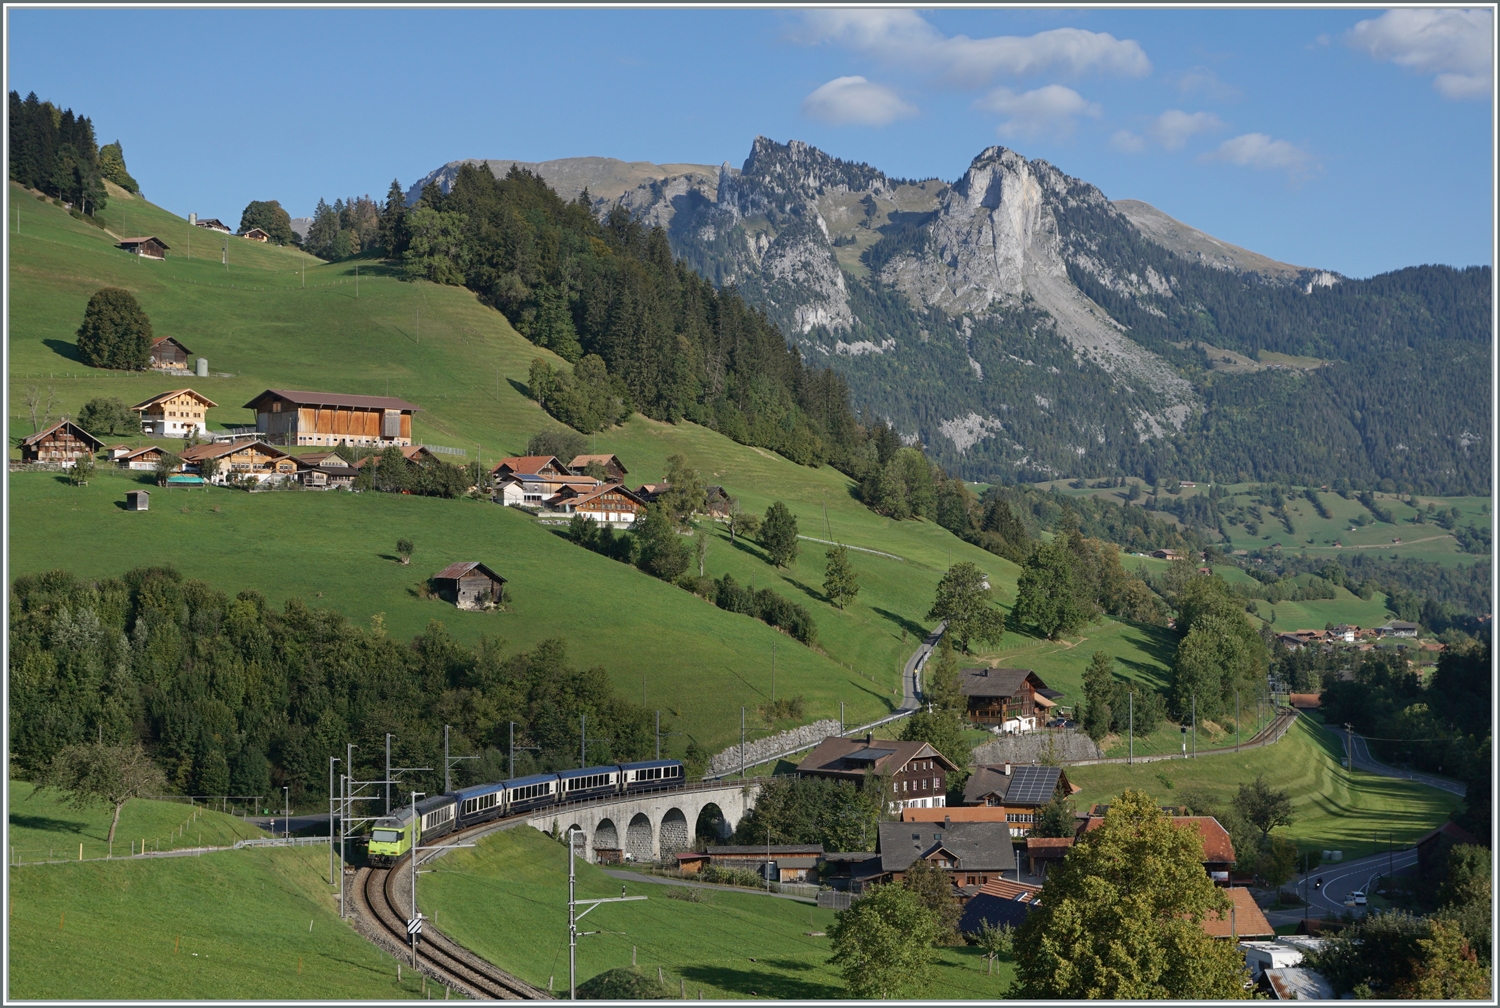 Der GoldenPass Express GPX 4064 von Montreux nach Interlaken Ost mit der BLS Re 465 014 bei Garstatt auf dem Weg nach Interlaken Ost. 

29. Sept. 2023